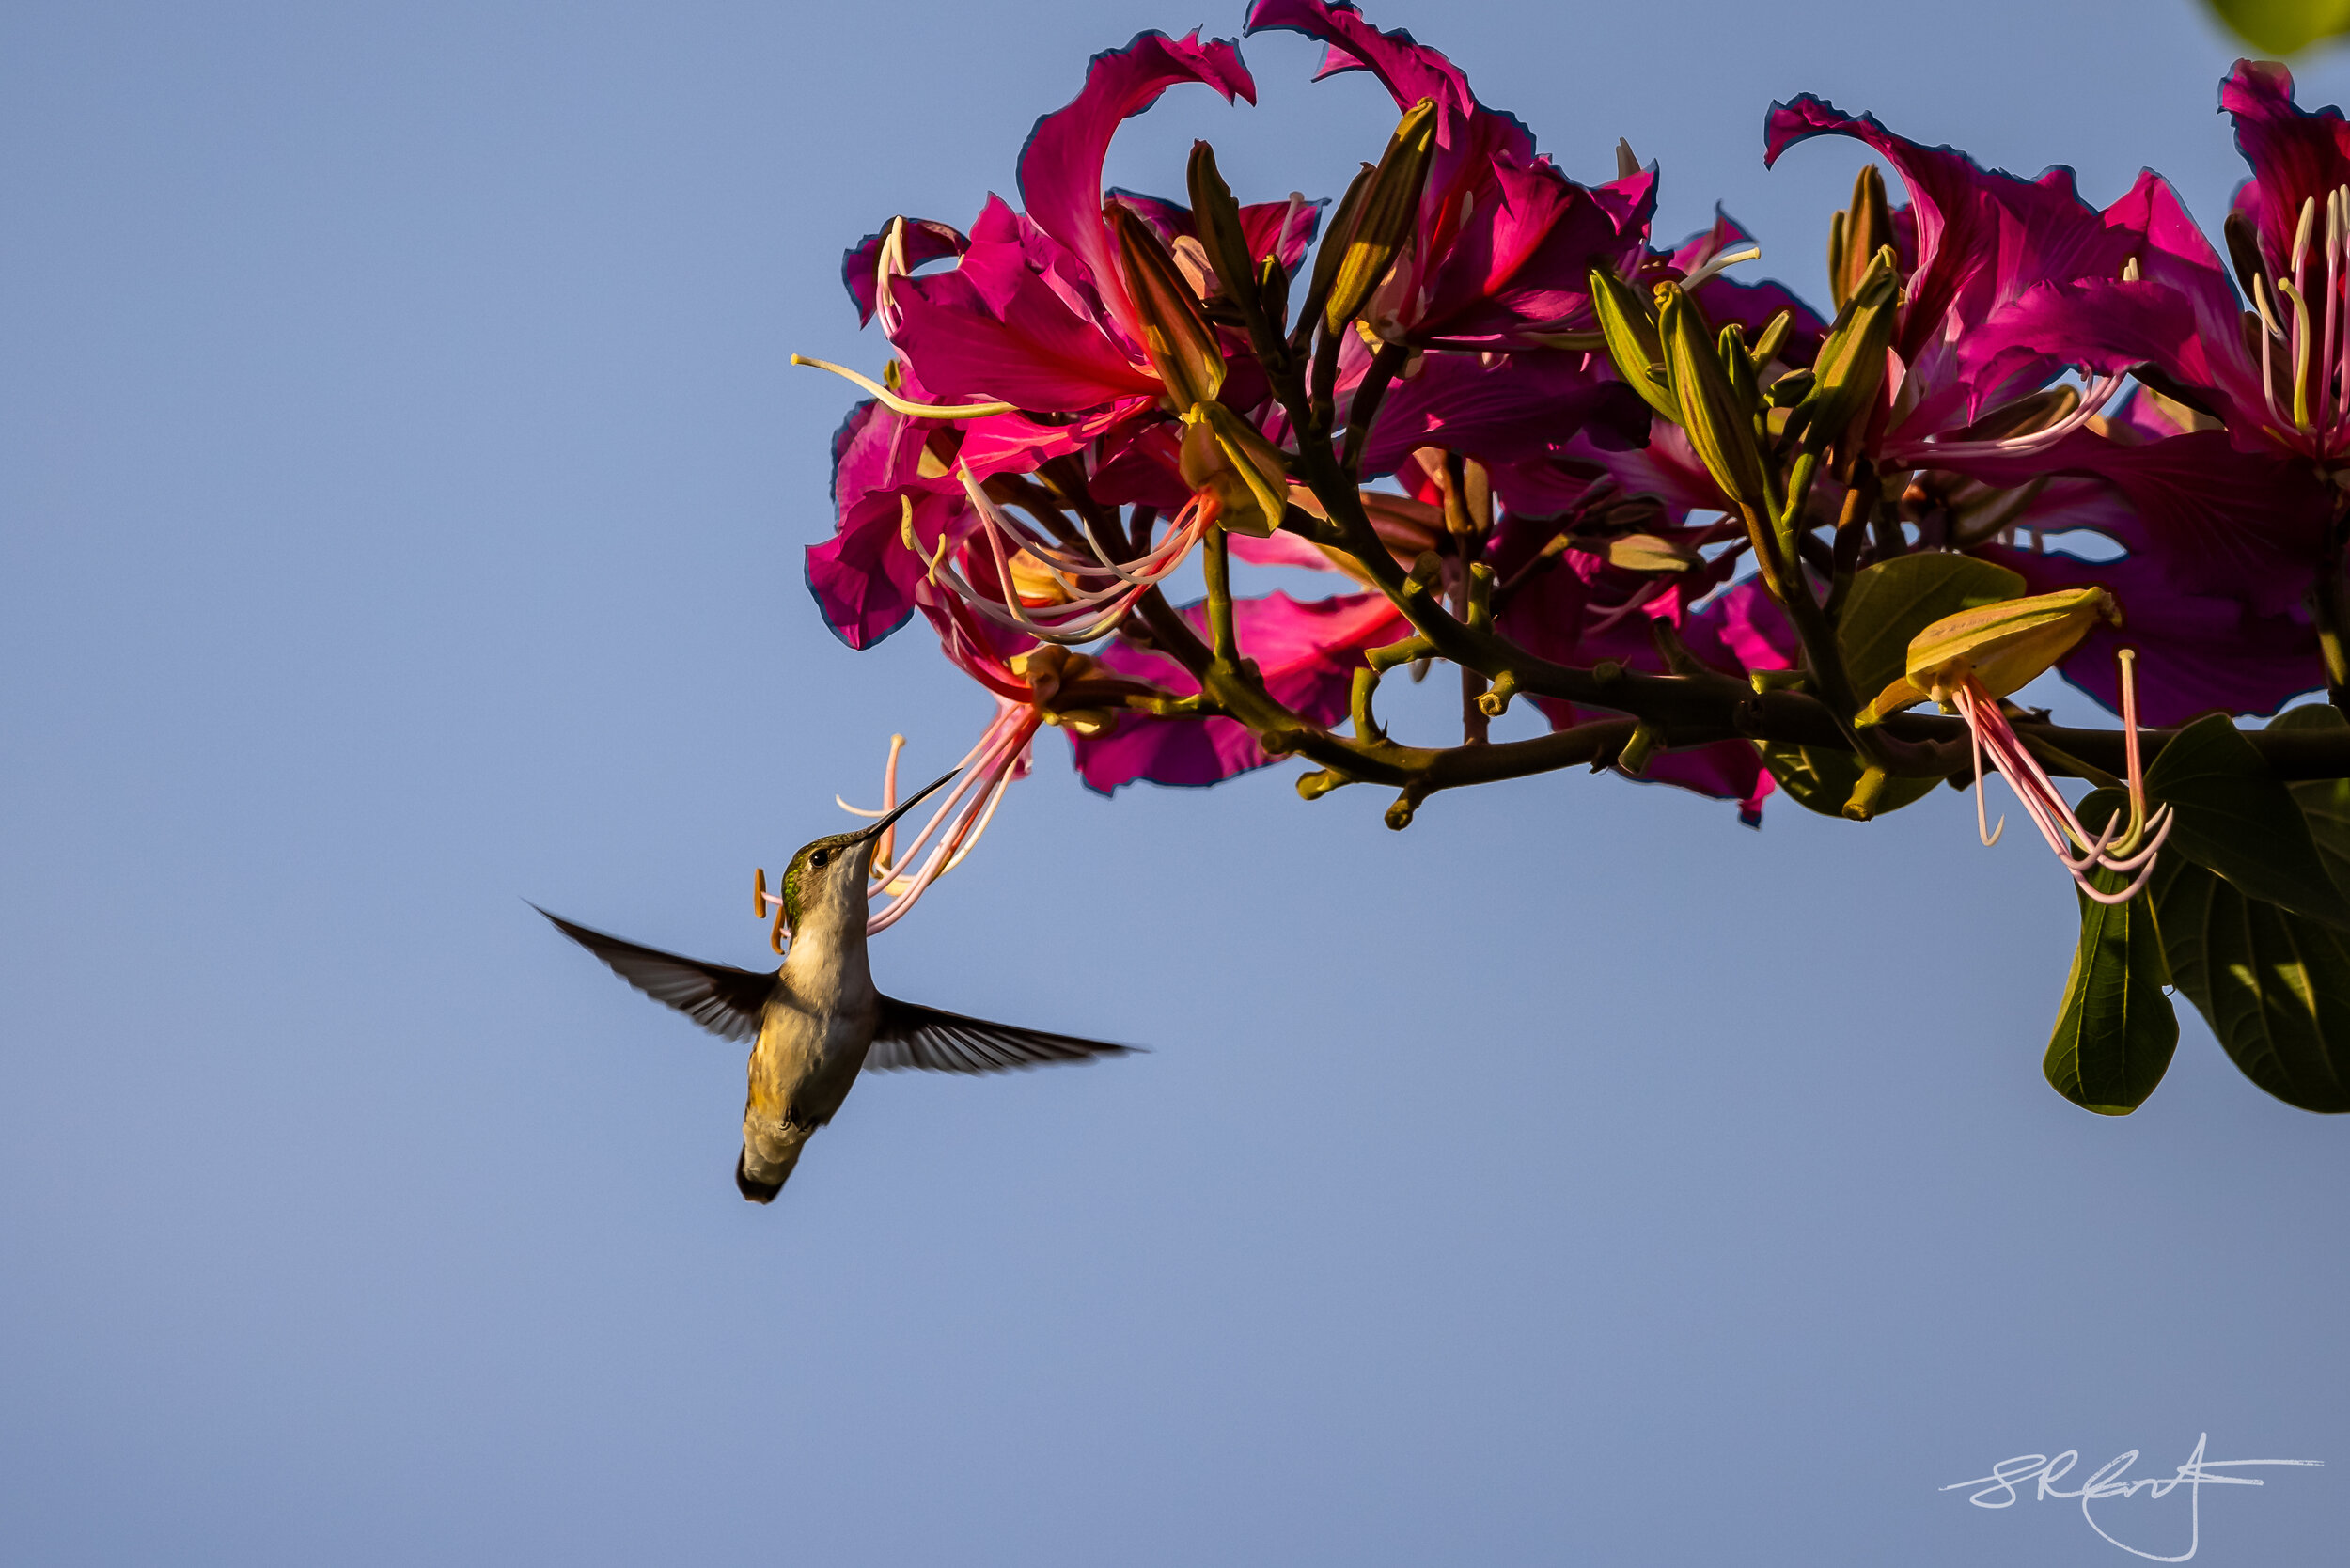 Ruby Throated Hummingbird at Hong Kong Orchid Tree